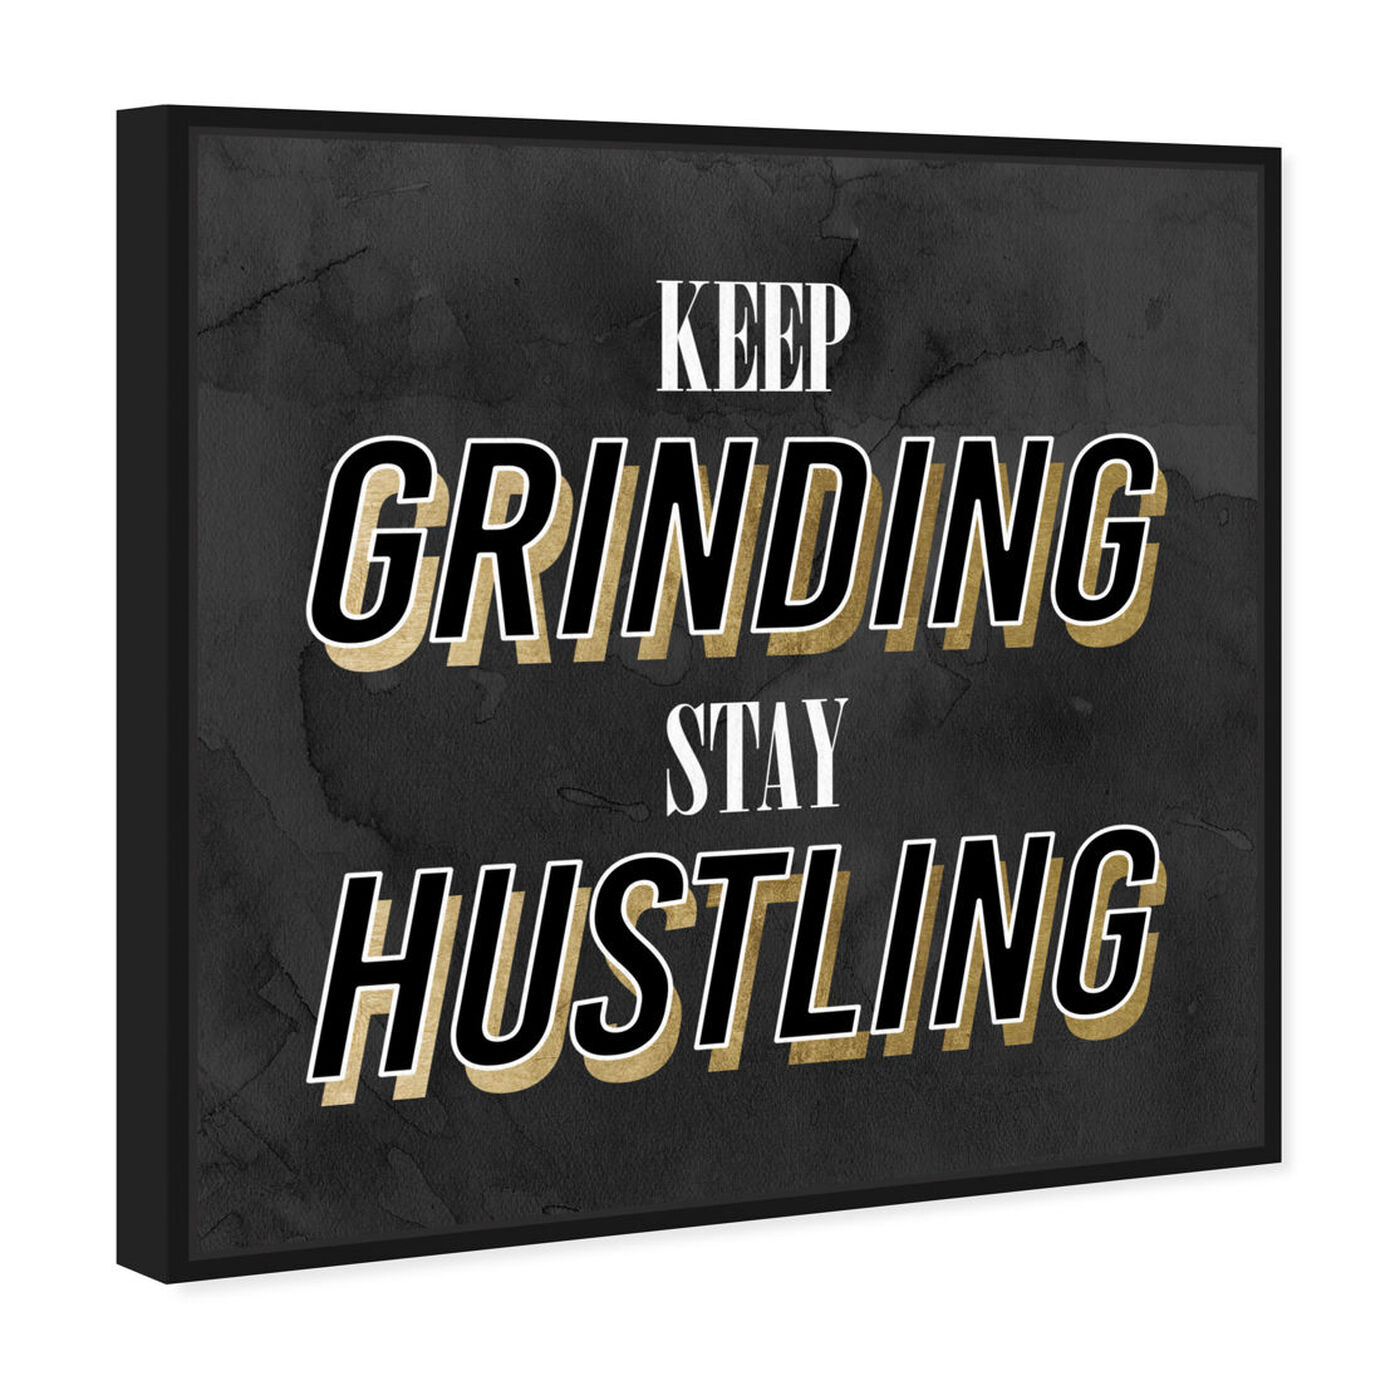 Cheers to all ladies / gentlemen who're hustling! 🥃 Keep hustling